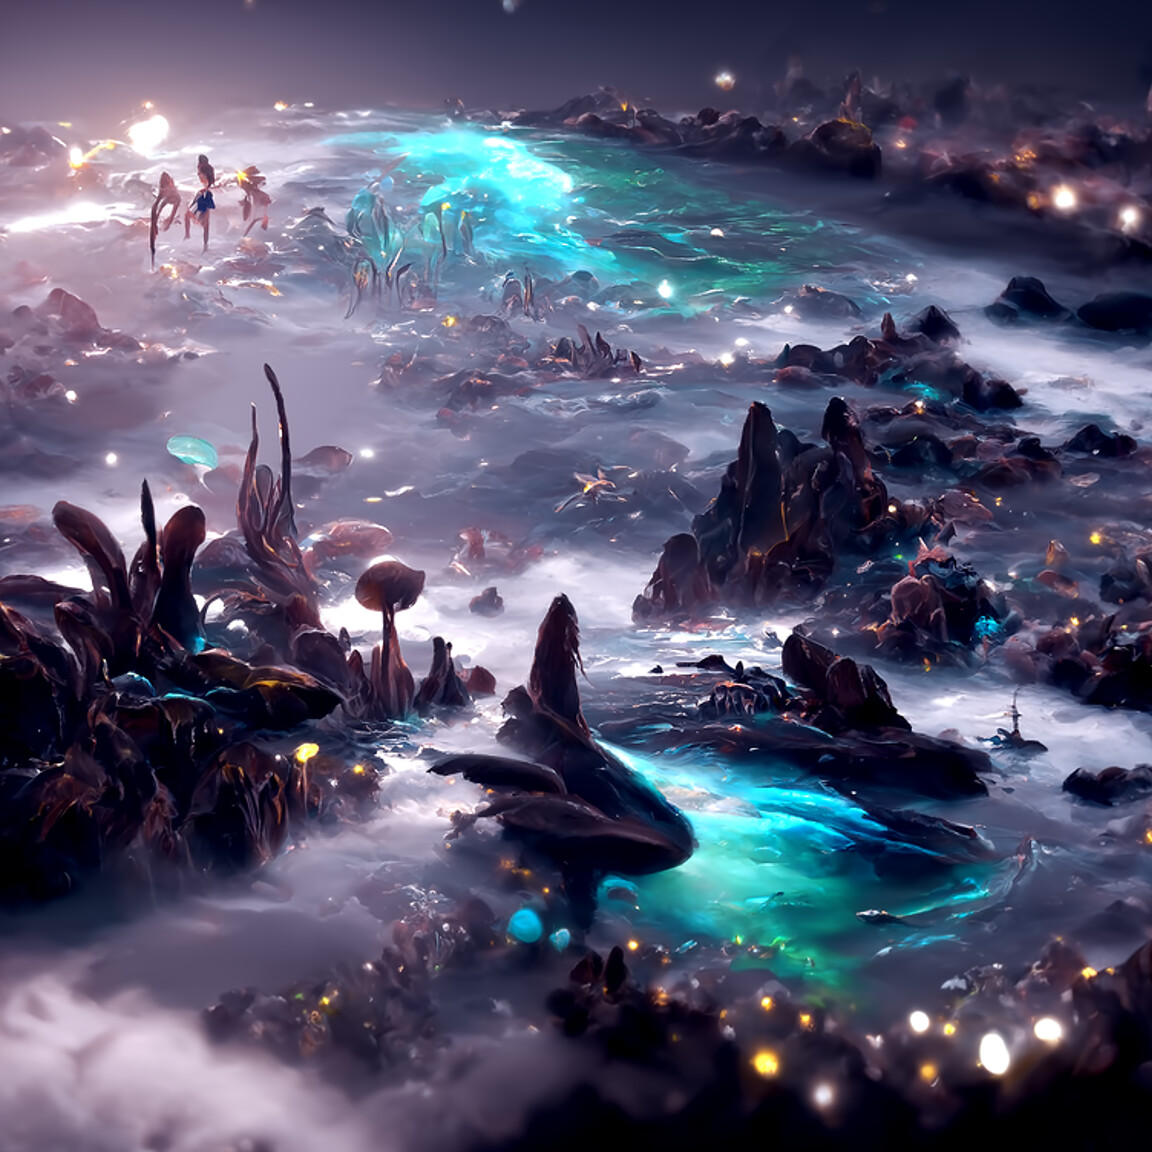 ArtStation - Dreaming of oceans | Artworks